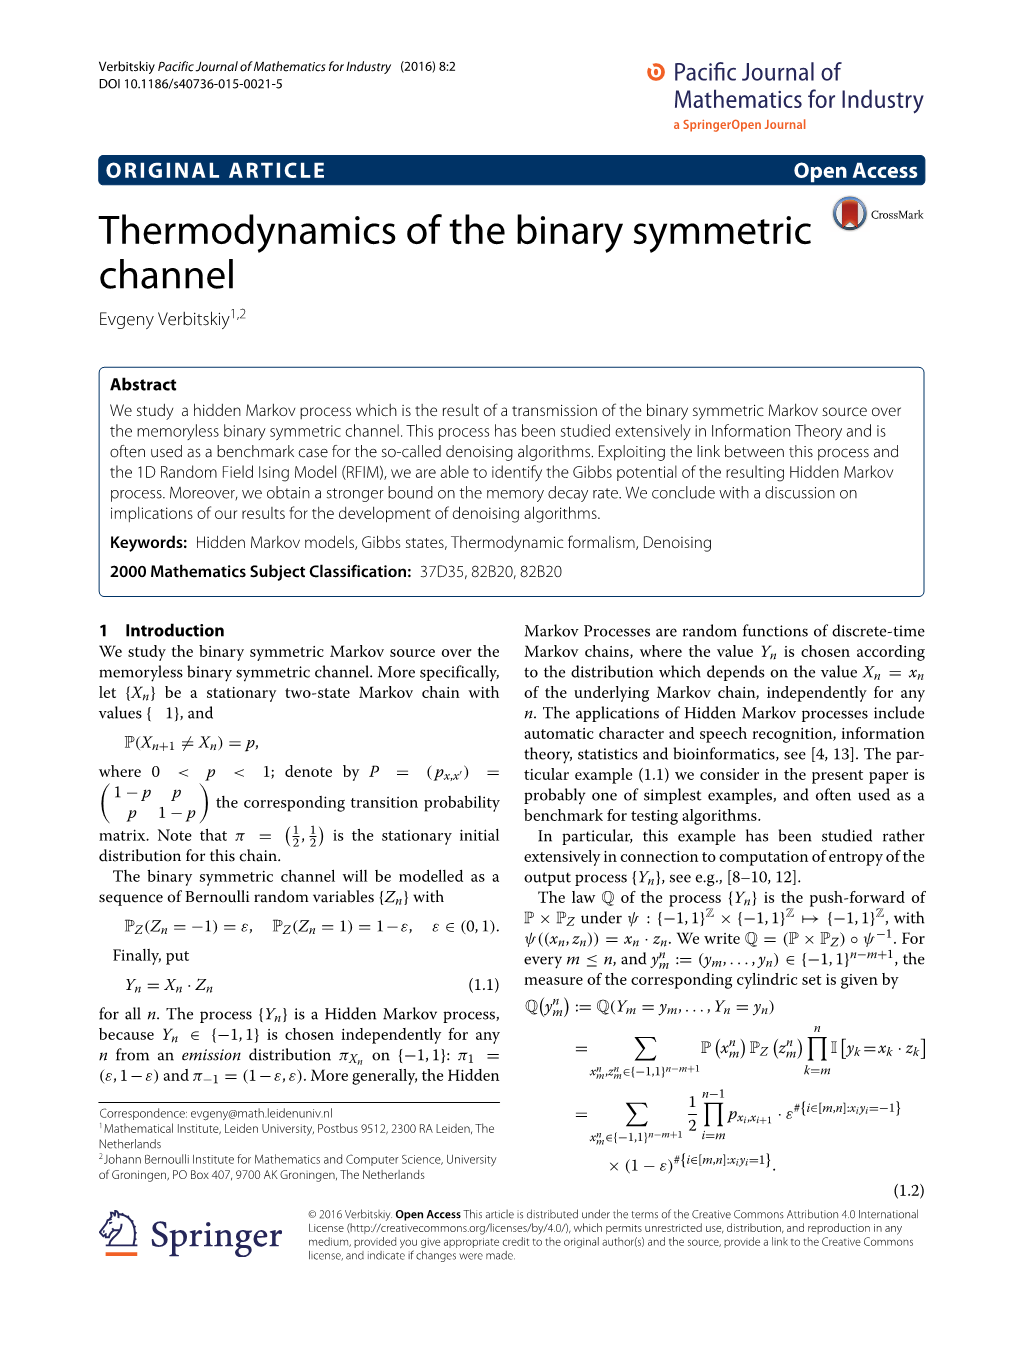 Thermodynamics of the Binary Symmetric Channel Evgeny Verbitskiy1,2